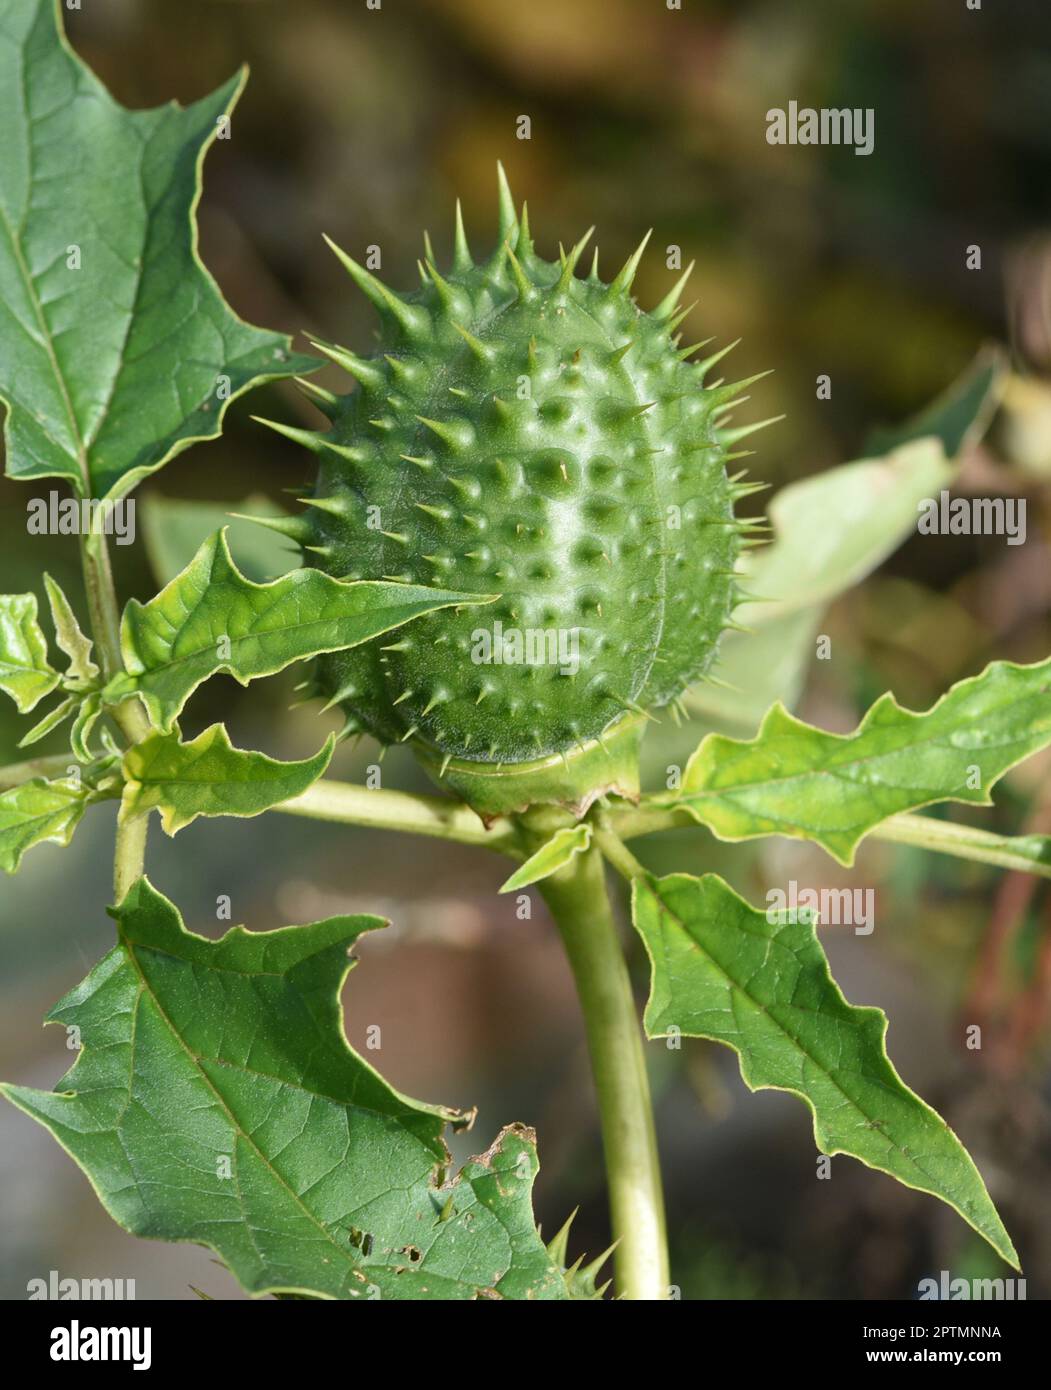 Stechapfel, Datura Stramonium ist eine Heilpflanze die auch in der Medizin eingesetzt wird. Thorn apple, Datura Stramonium is a medicinal plant that i Stock Photo